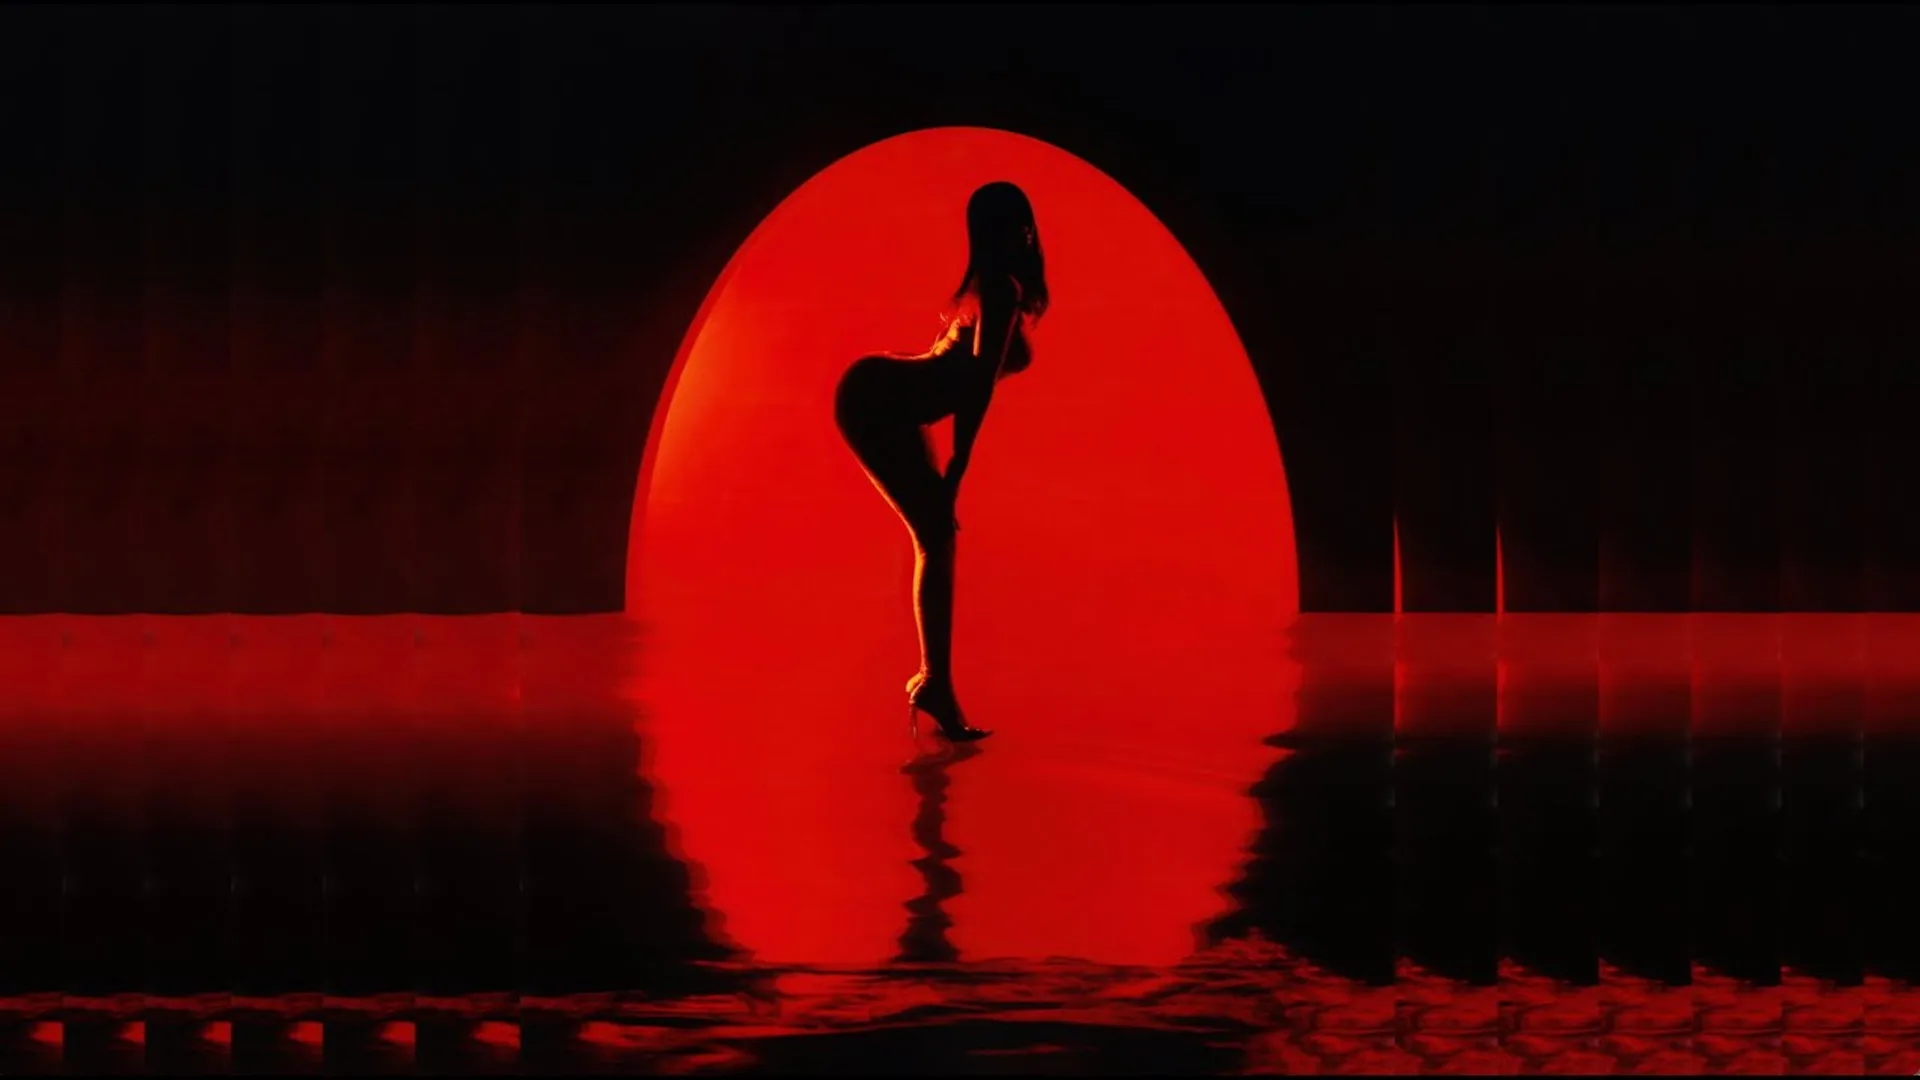 Kali Uchis en el video de Moonlight con una luna roja de fondo